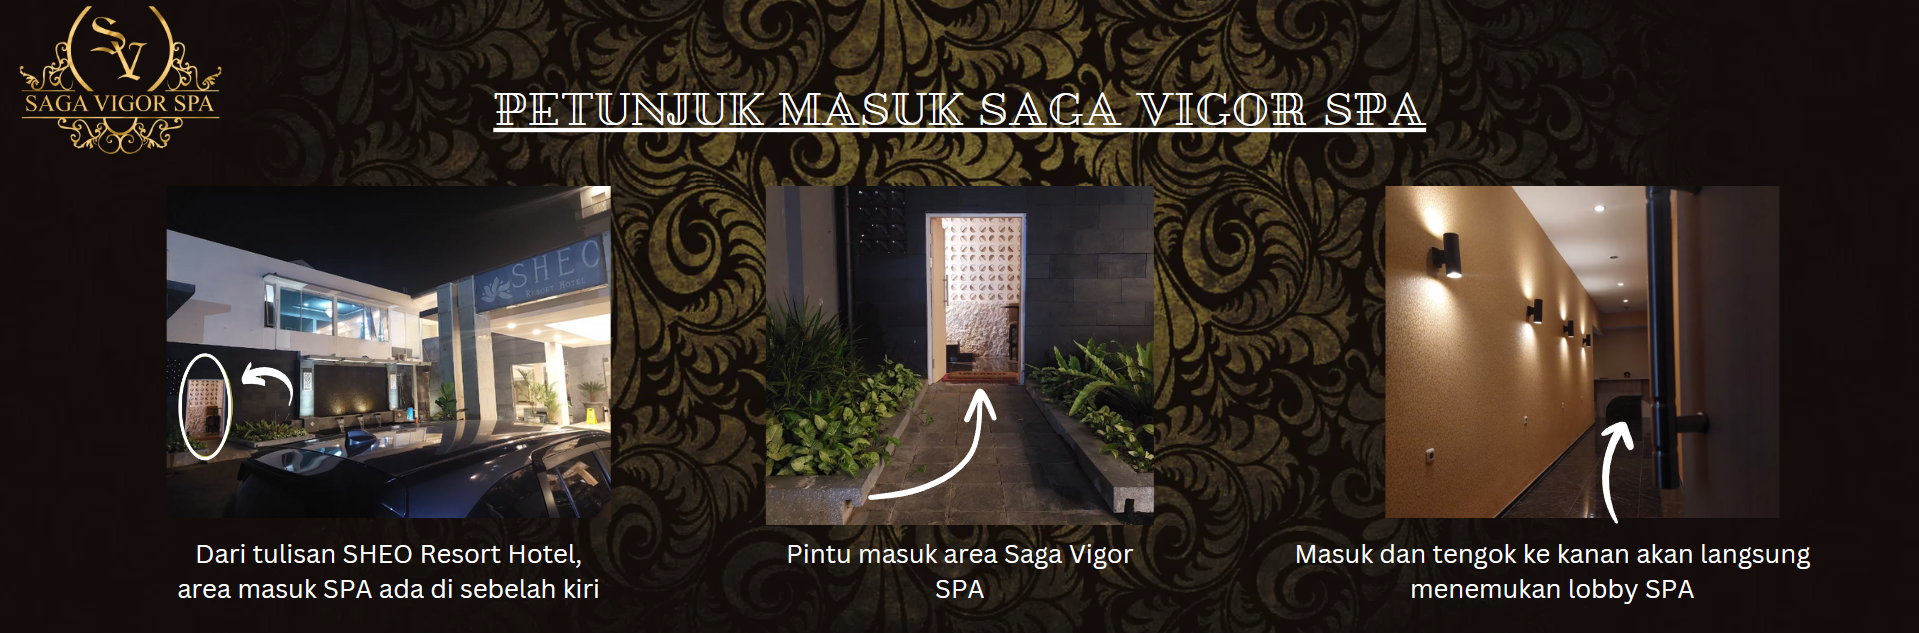 New Saga Vigor Bandung - by Ivan Management